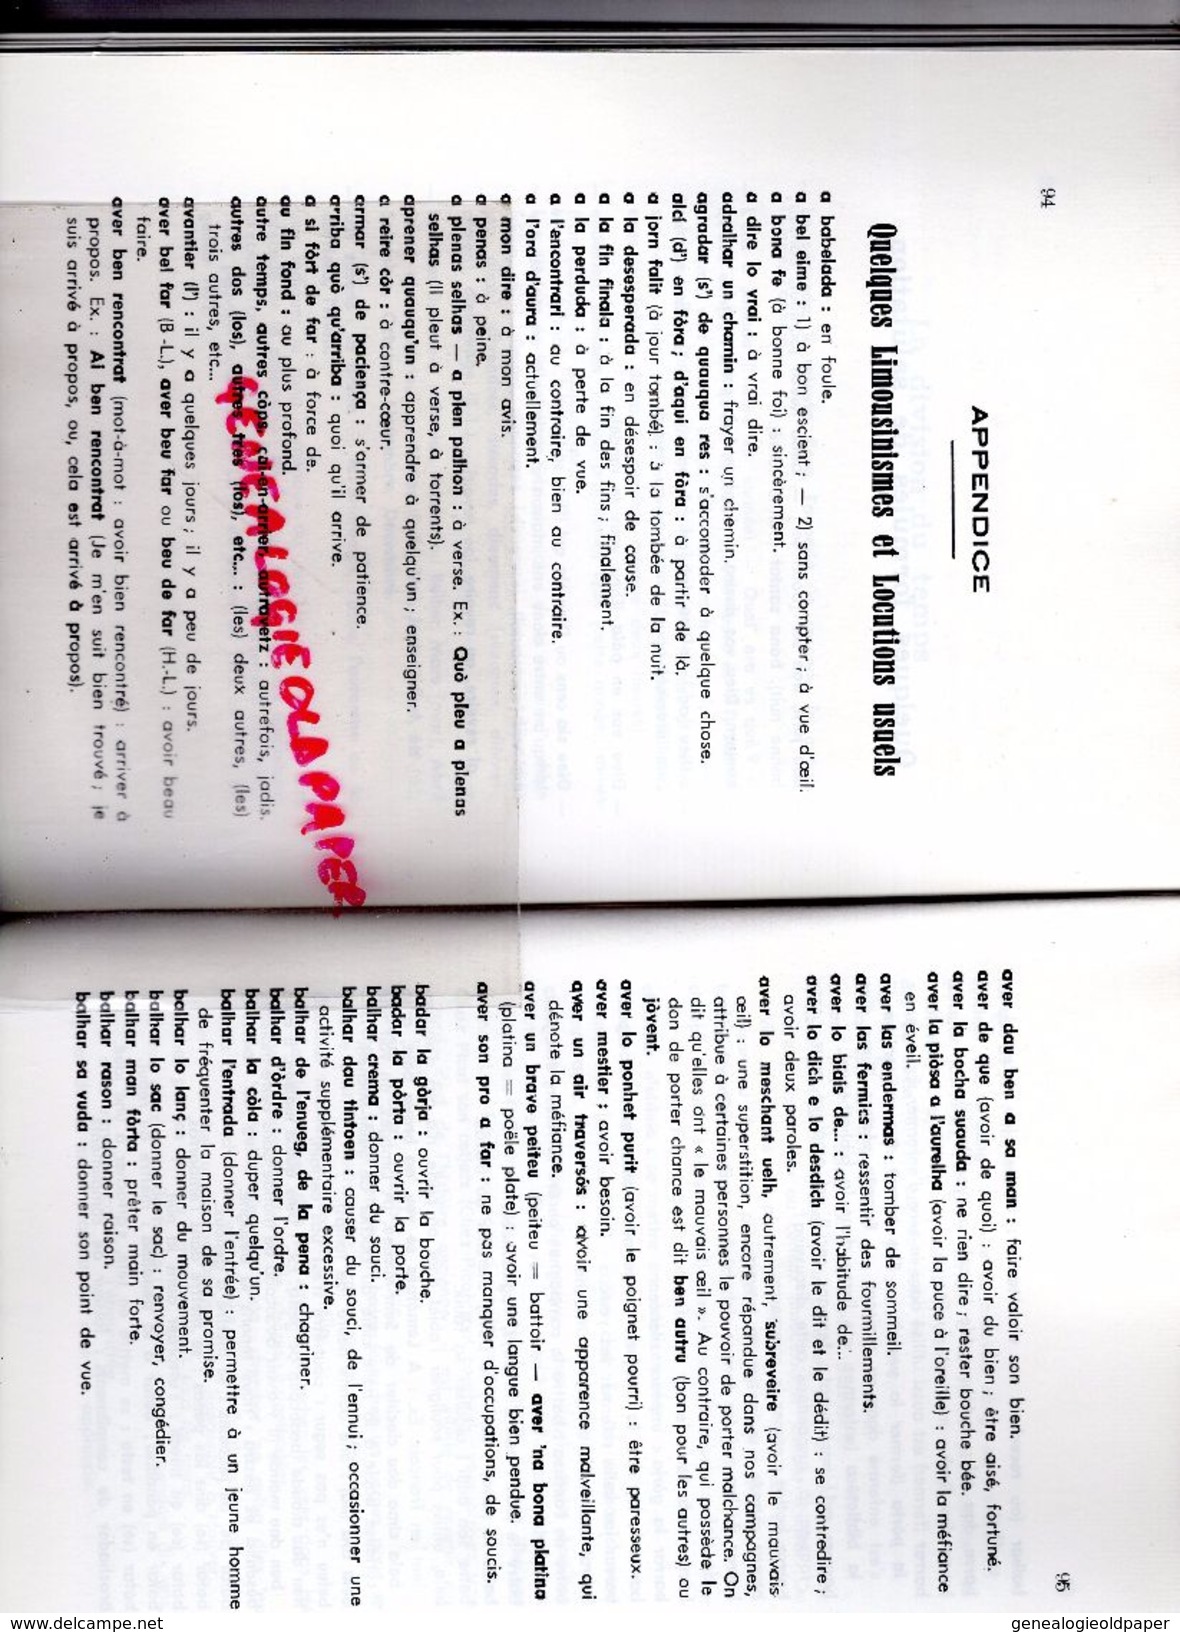 19-87 - 23- GRAMMAIRE LIMOUSINE-MICHEL TINTOU- ROBERT JOUDOUX-LEMOUZI TULLE 1983- JEAN MOUZAT LIMOGES-IMPRIMERIE ORFEUIL - Limousin